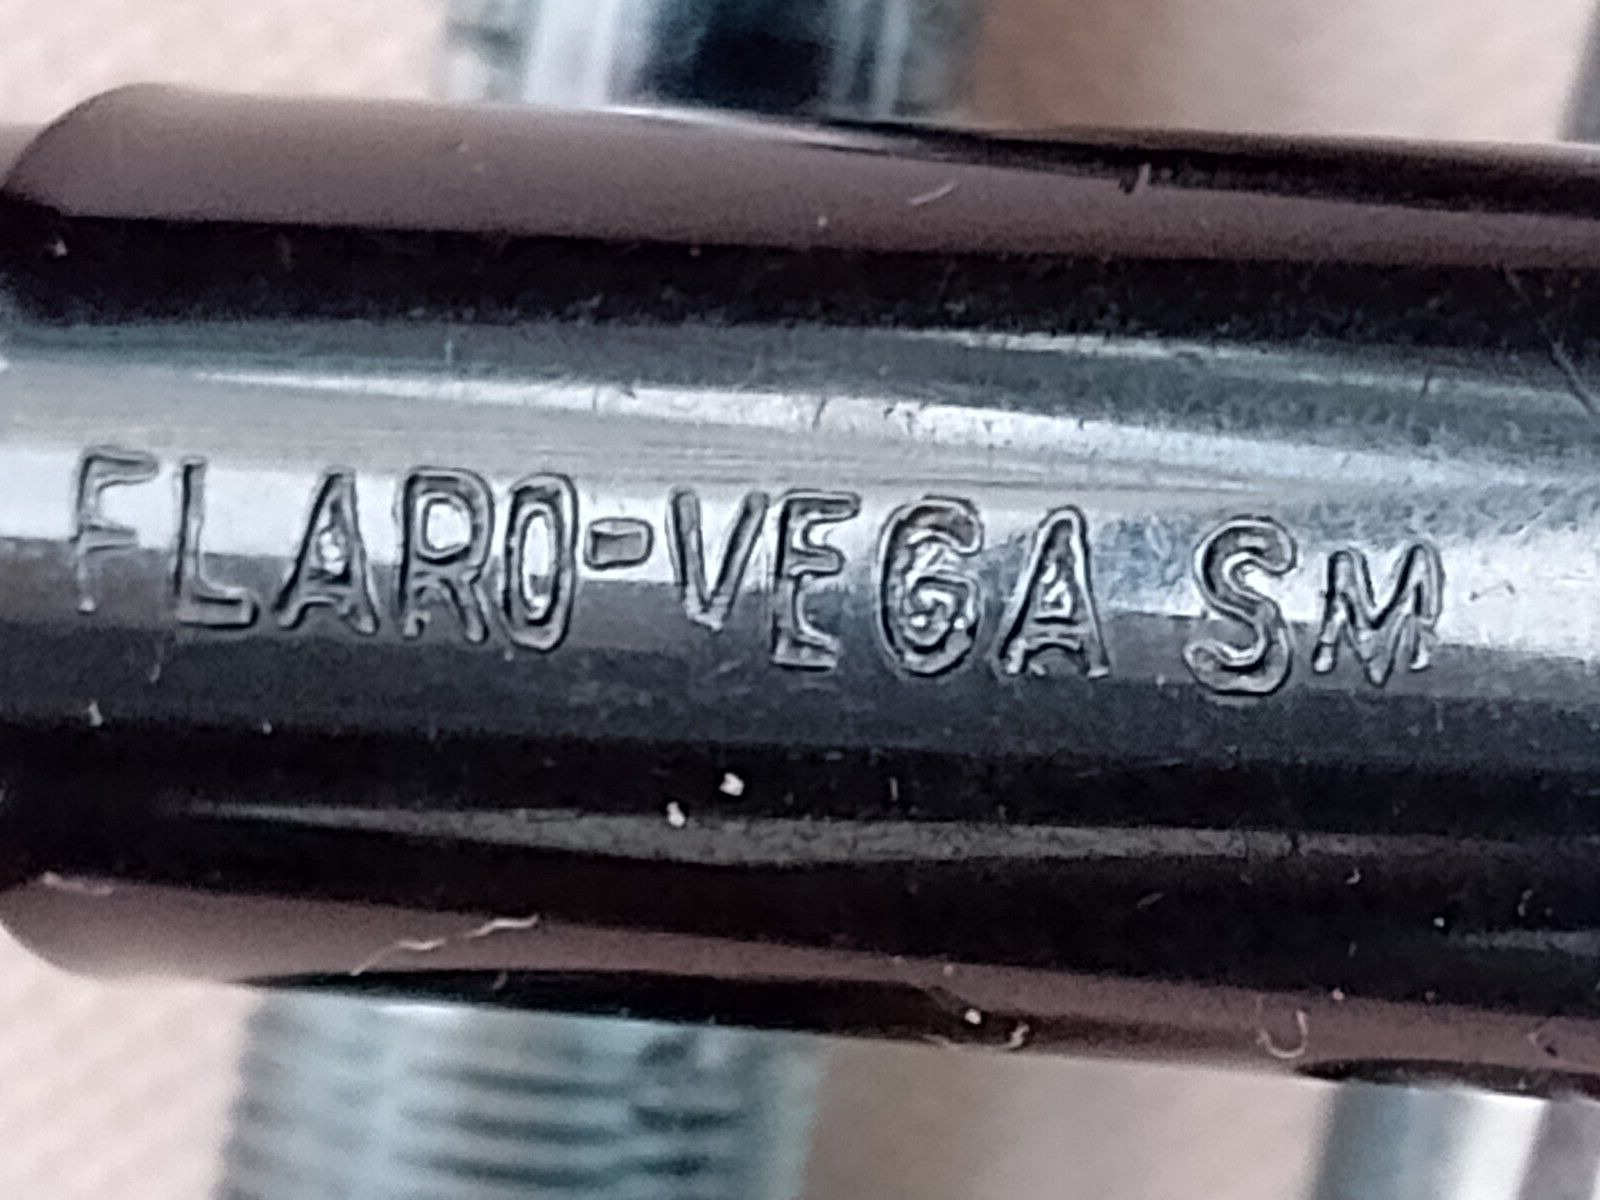 VINTAGE Flaring-Vega SM Romania FOUNTAIN PEN piston filler for repair Vtg